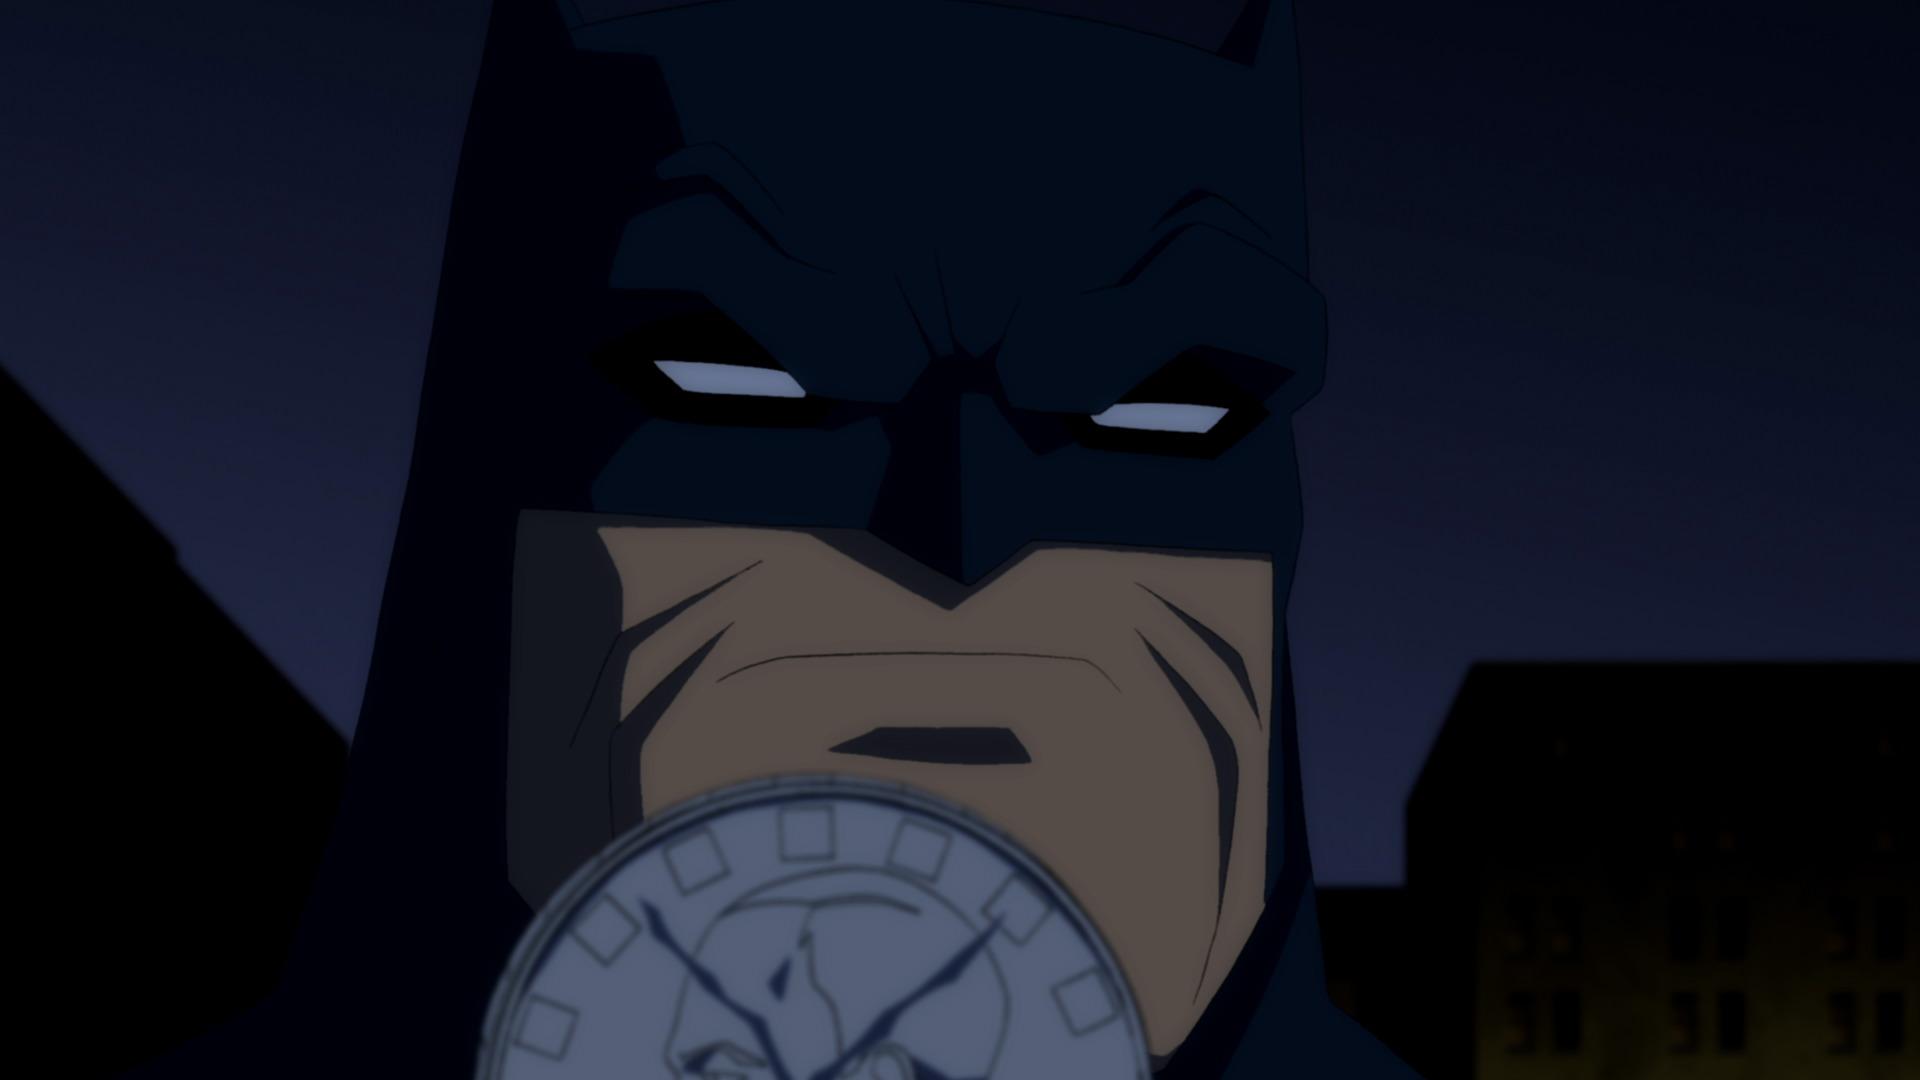 Бэтмен 1 9 9 2. Бэтмен 2012 Возвращение темного рыцаря. Бэтмен: Возвращение тёмного рыцаря (2013). Темный рыцарь: Возрождение легенды. Часть 1. Бэтмен: Возвращение темного рыцаря, часть 1 / Batman: the Dark Knight Returns, Part 1 (2012).